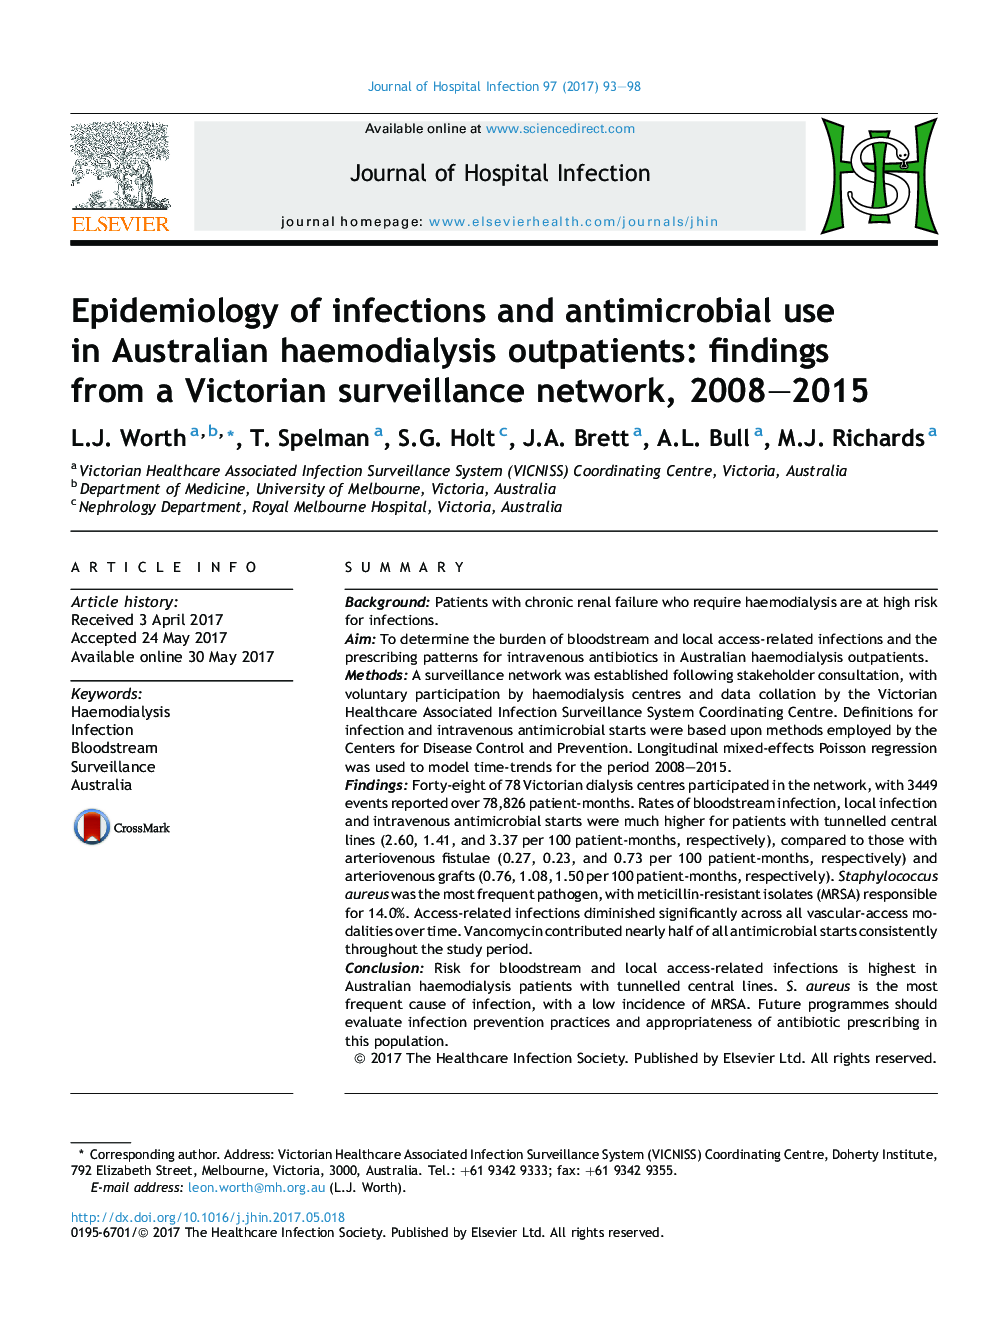 اپیدمیولوژی عفونت ها و استفاده از ضد میکروبی در بیمارستان های همودیالیز استرالیا: یافته های یک شبکه نظارت ویکتوریا، 2008-2015 